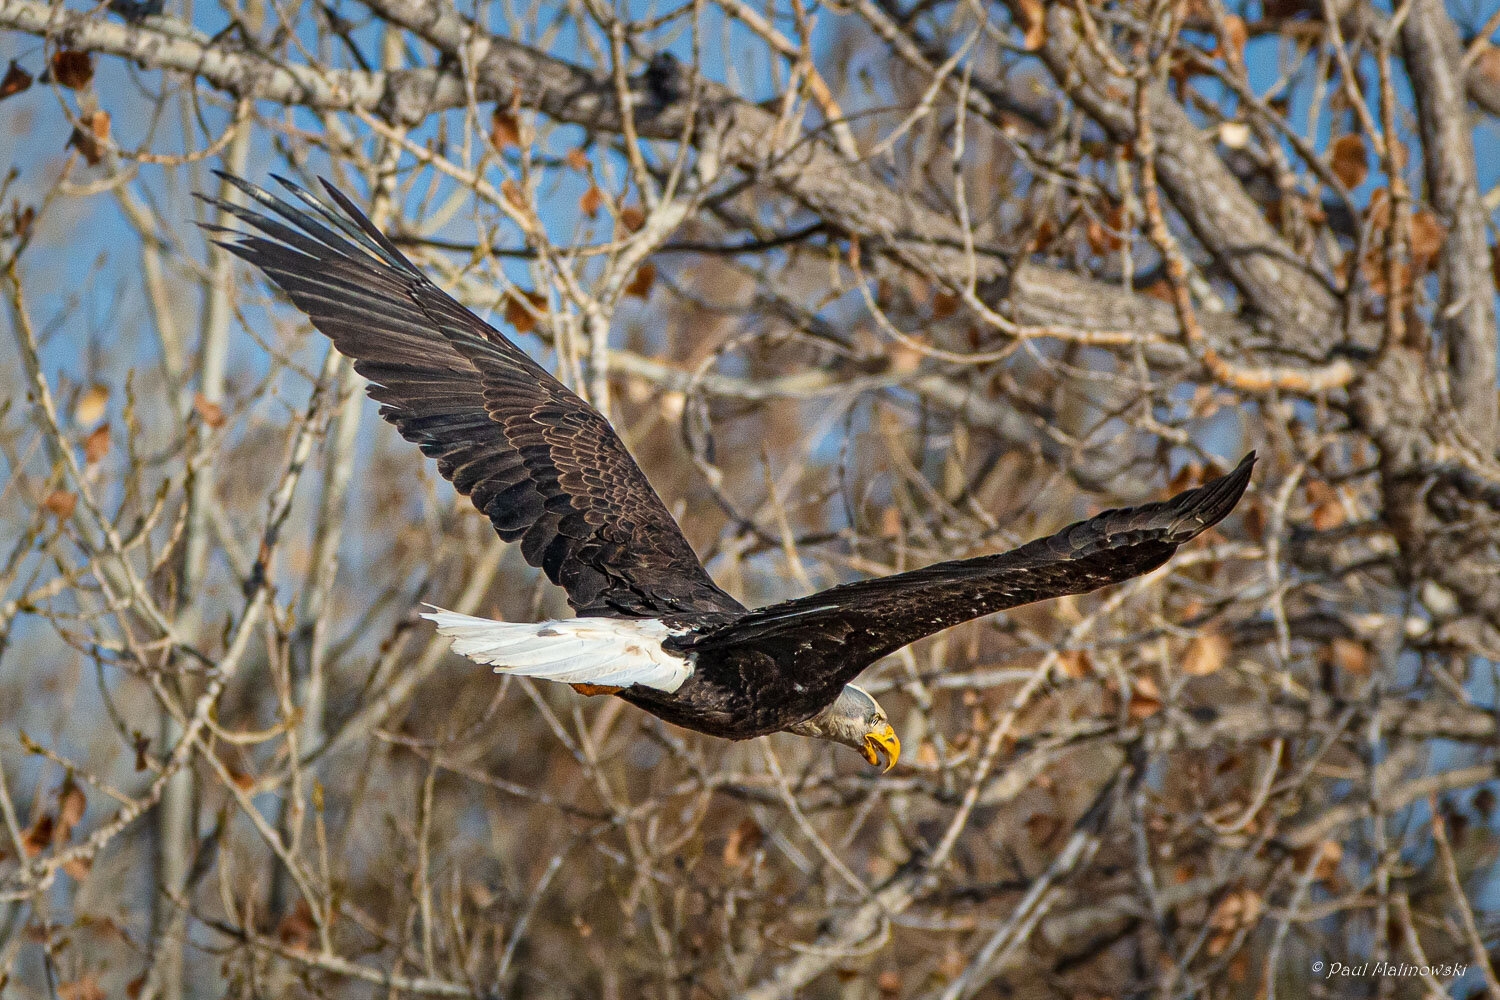 eagle-in-flight